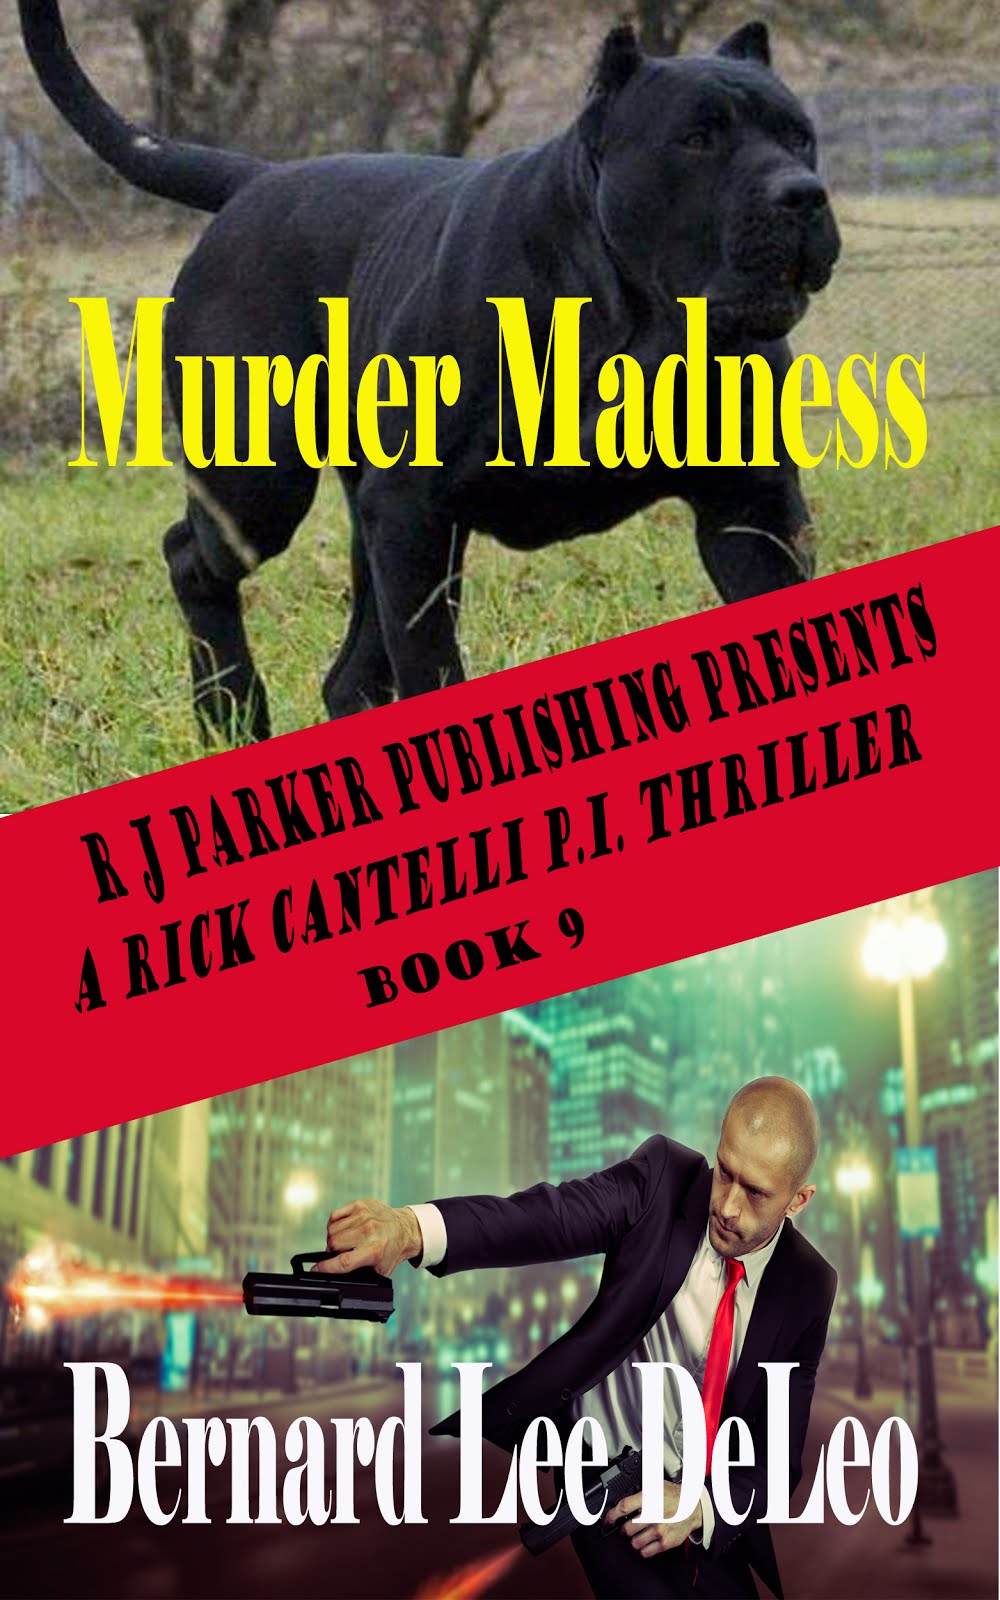 Rick Cantelli, P.I. Book 9: Murder Madness